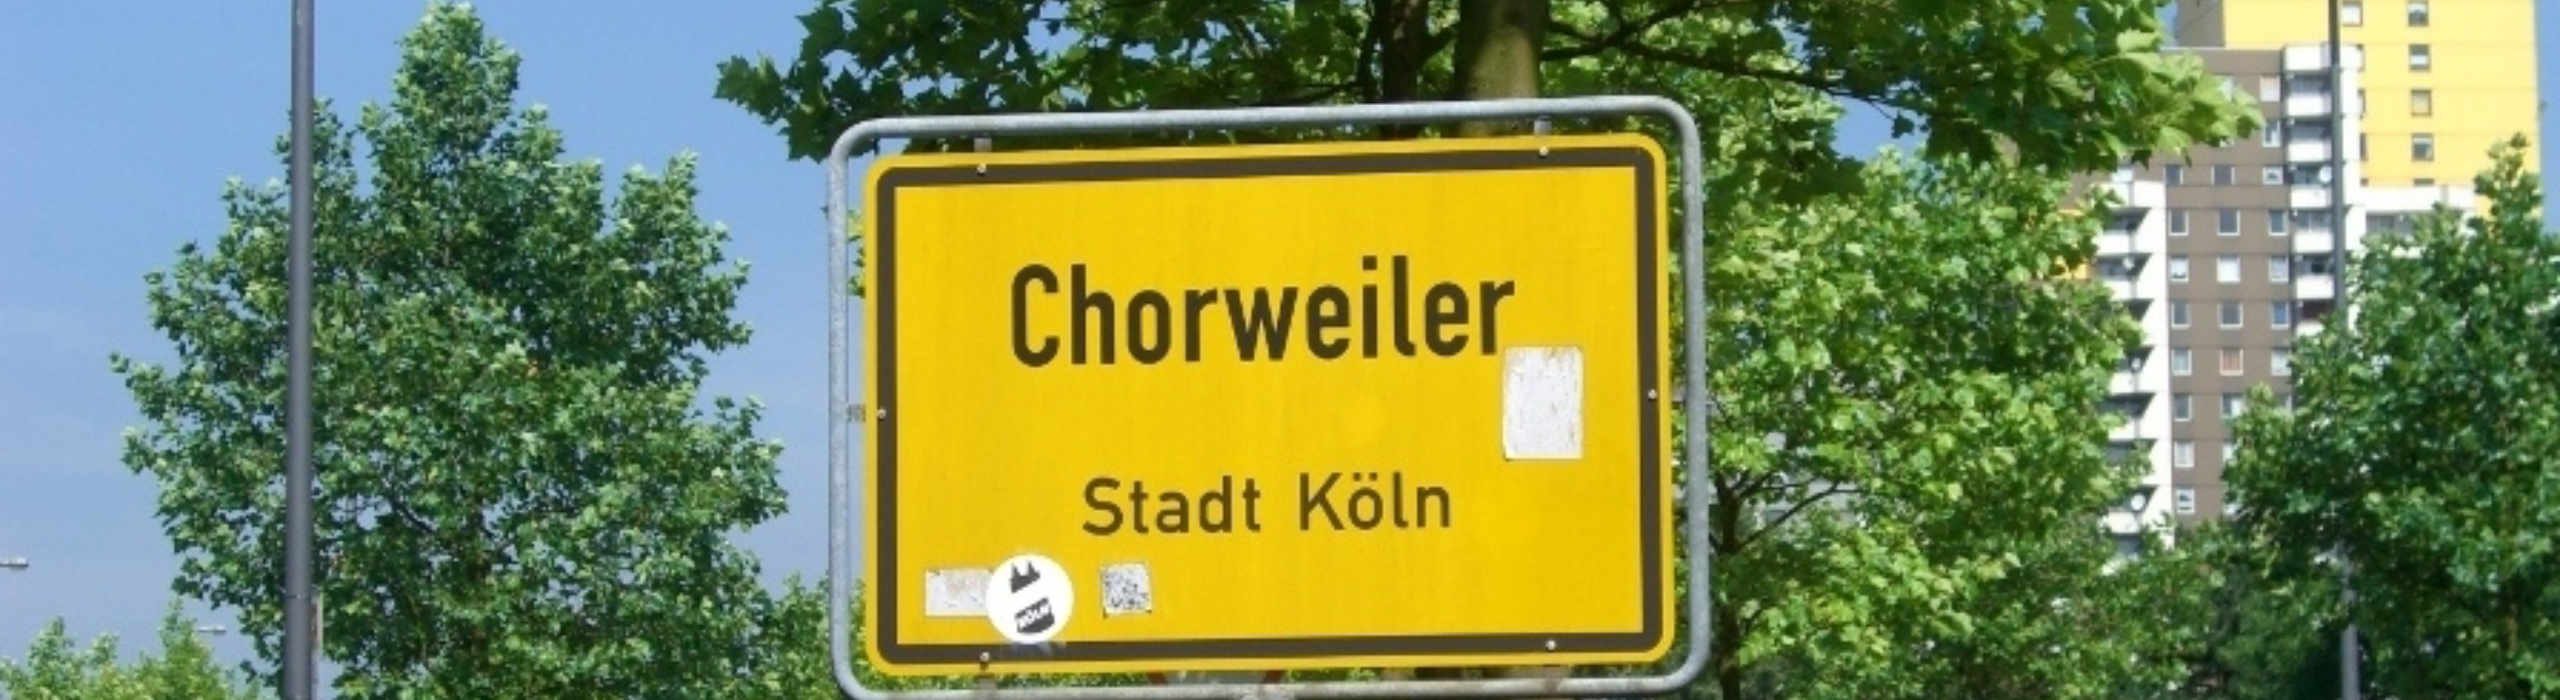 20190405 Ueber Chorweiler